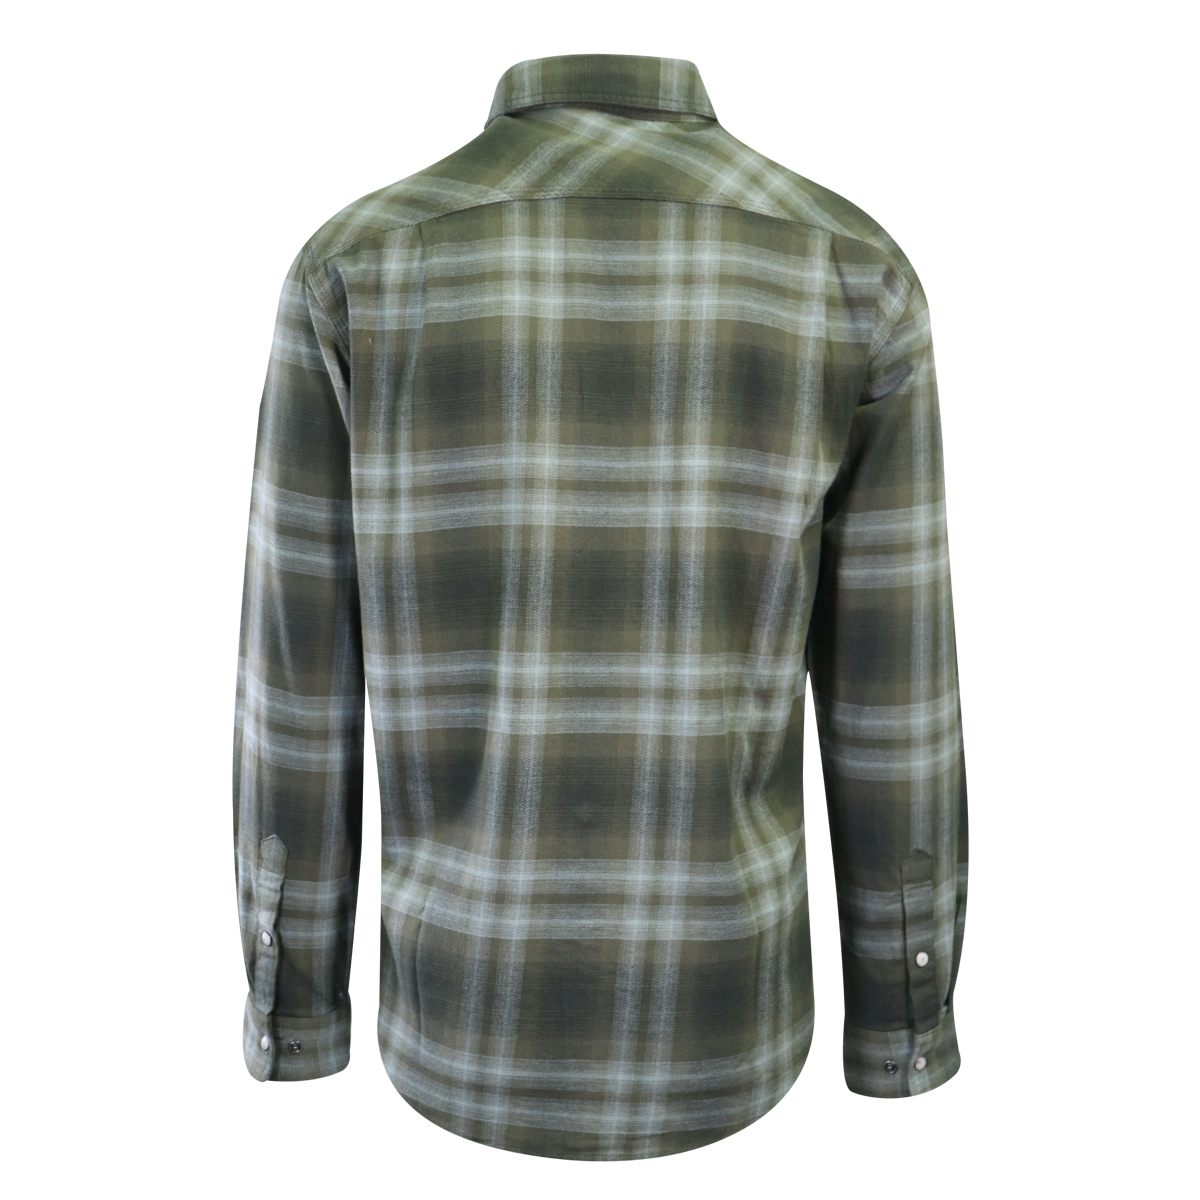 Carhartt Men's Woven Shirt Green Plaid Long Sleeve (331)